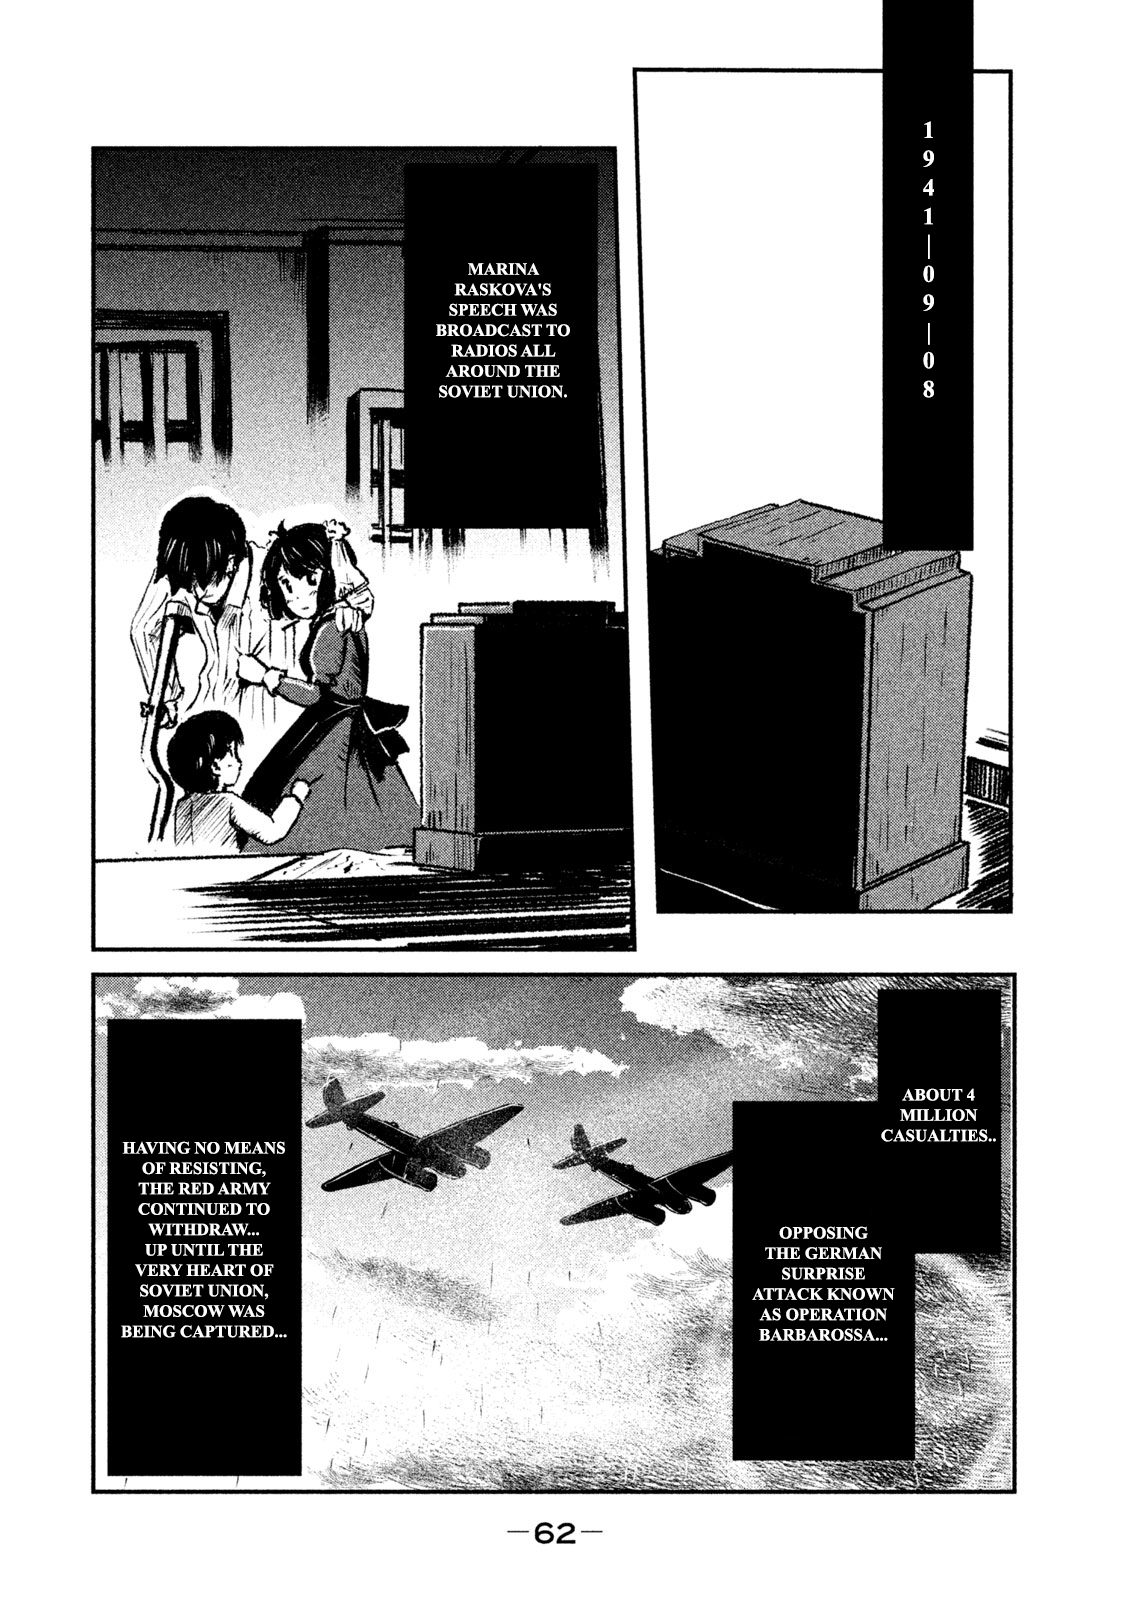 Shirayuri wa Ake ni Somaranai Vol. 1 Ch. 1 First Flight